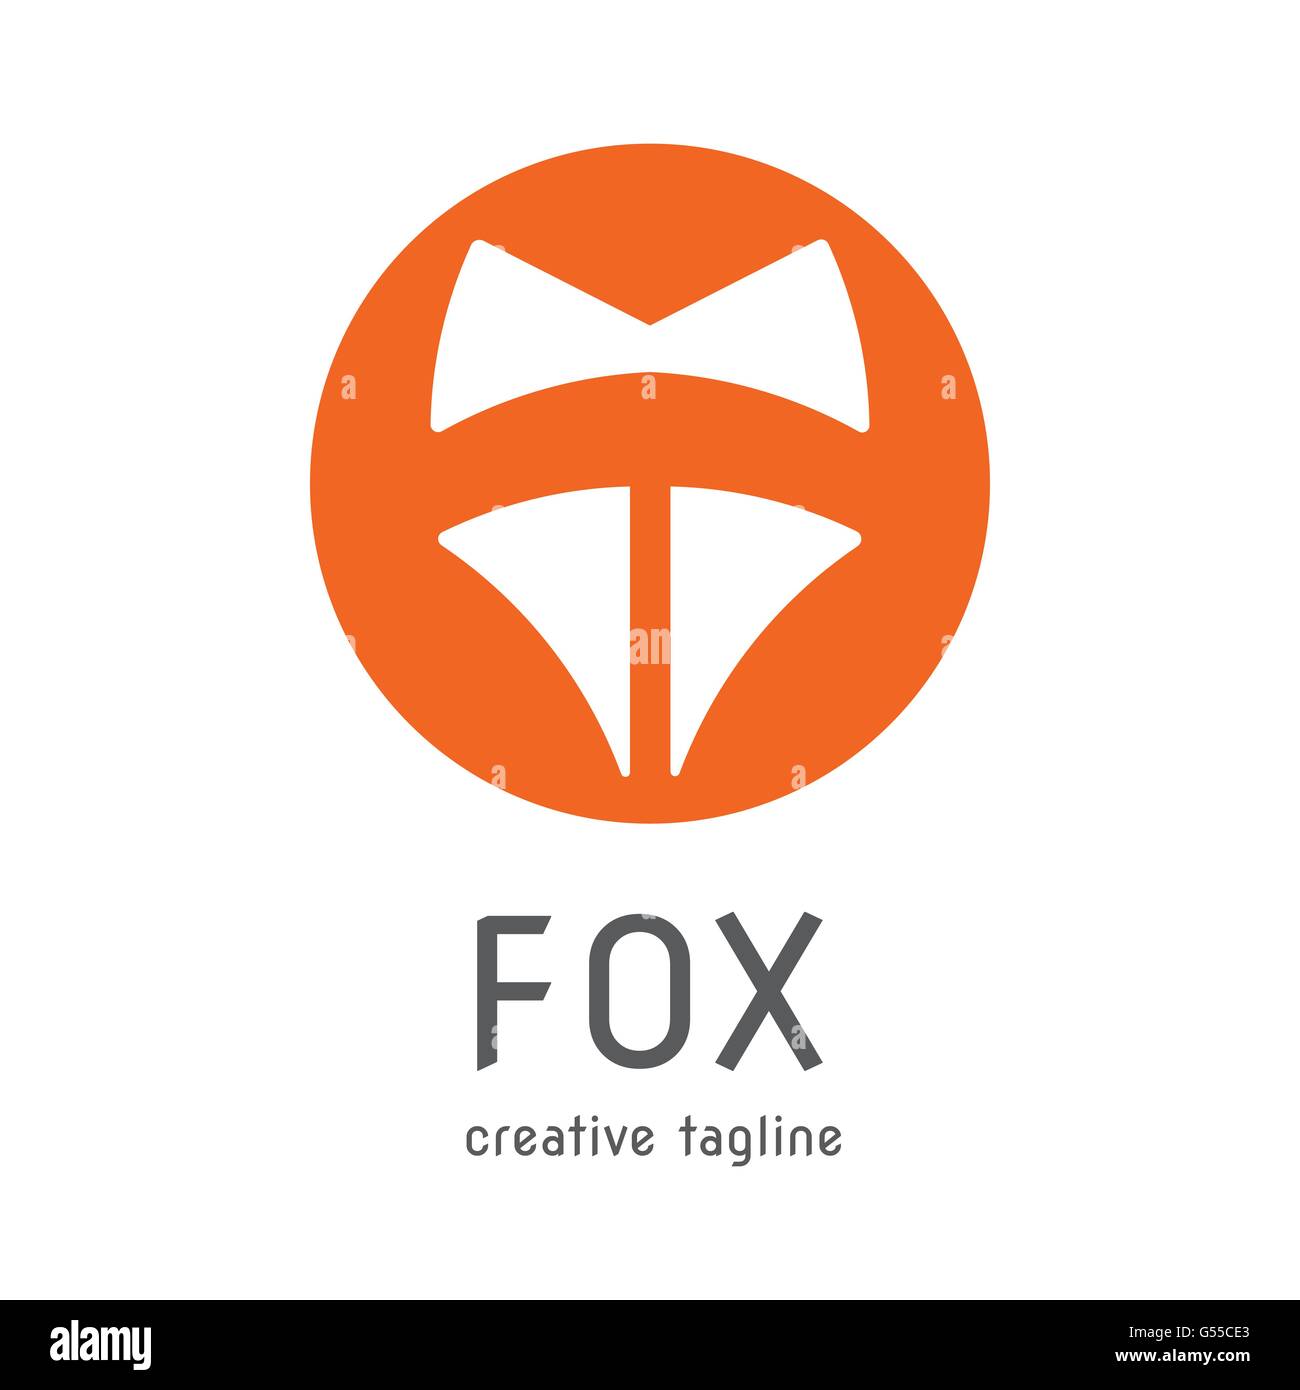 Fox orange symbole de la tête de l'entreprise créative vecteur conception logo Illustration de Vecteur